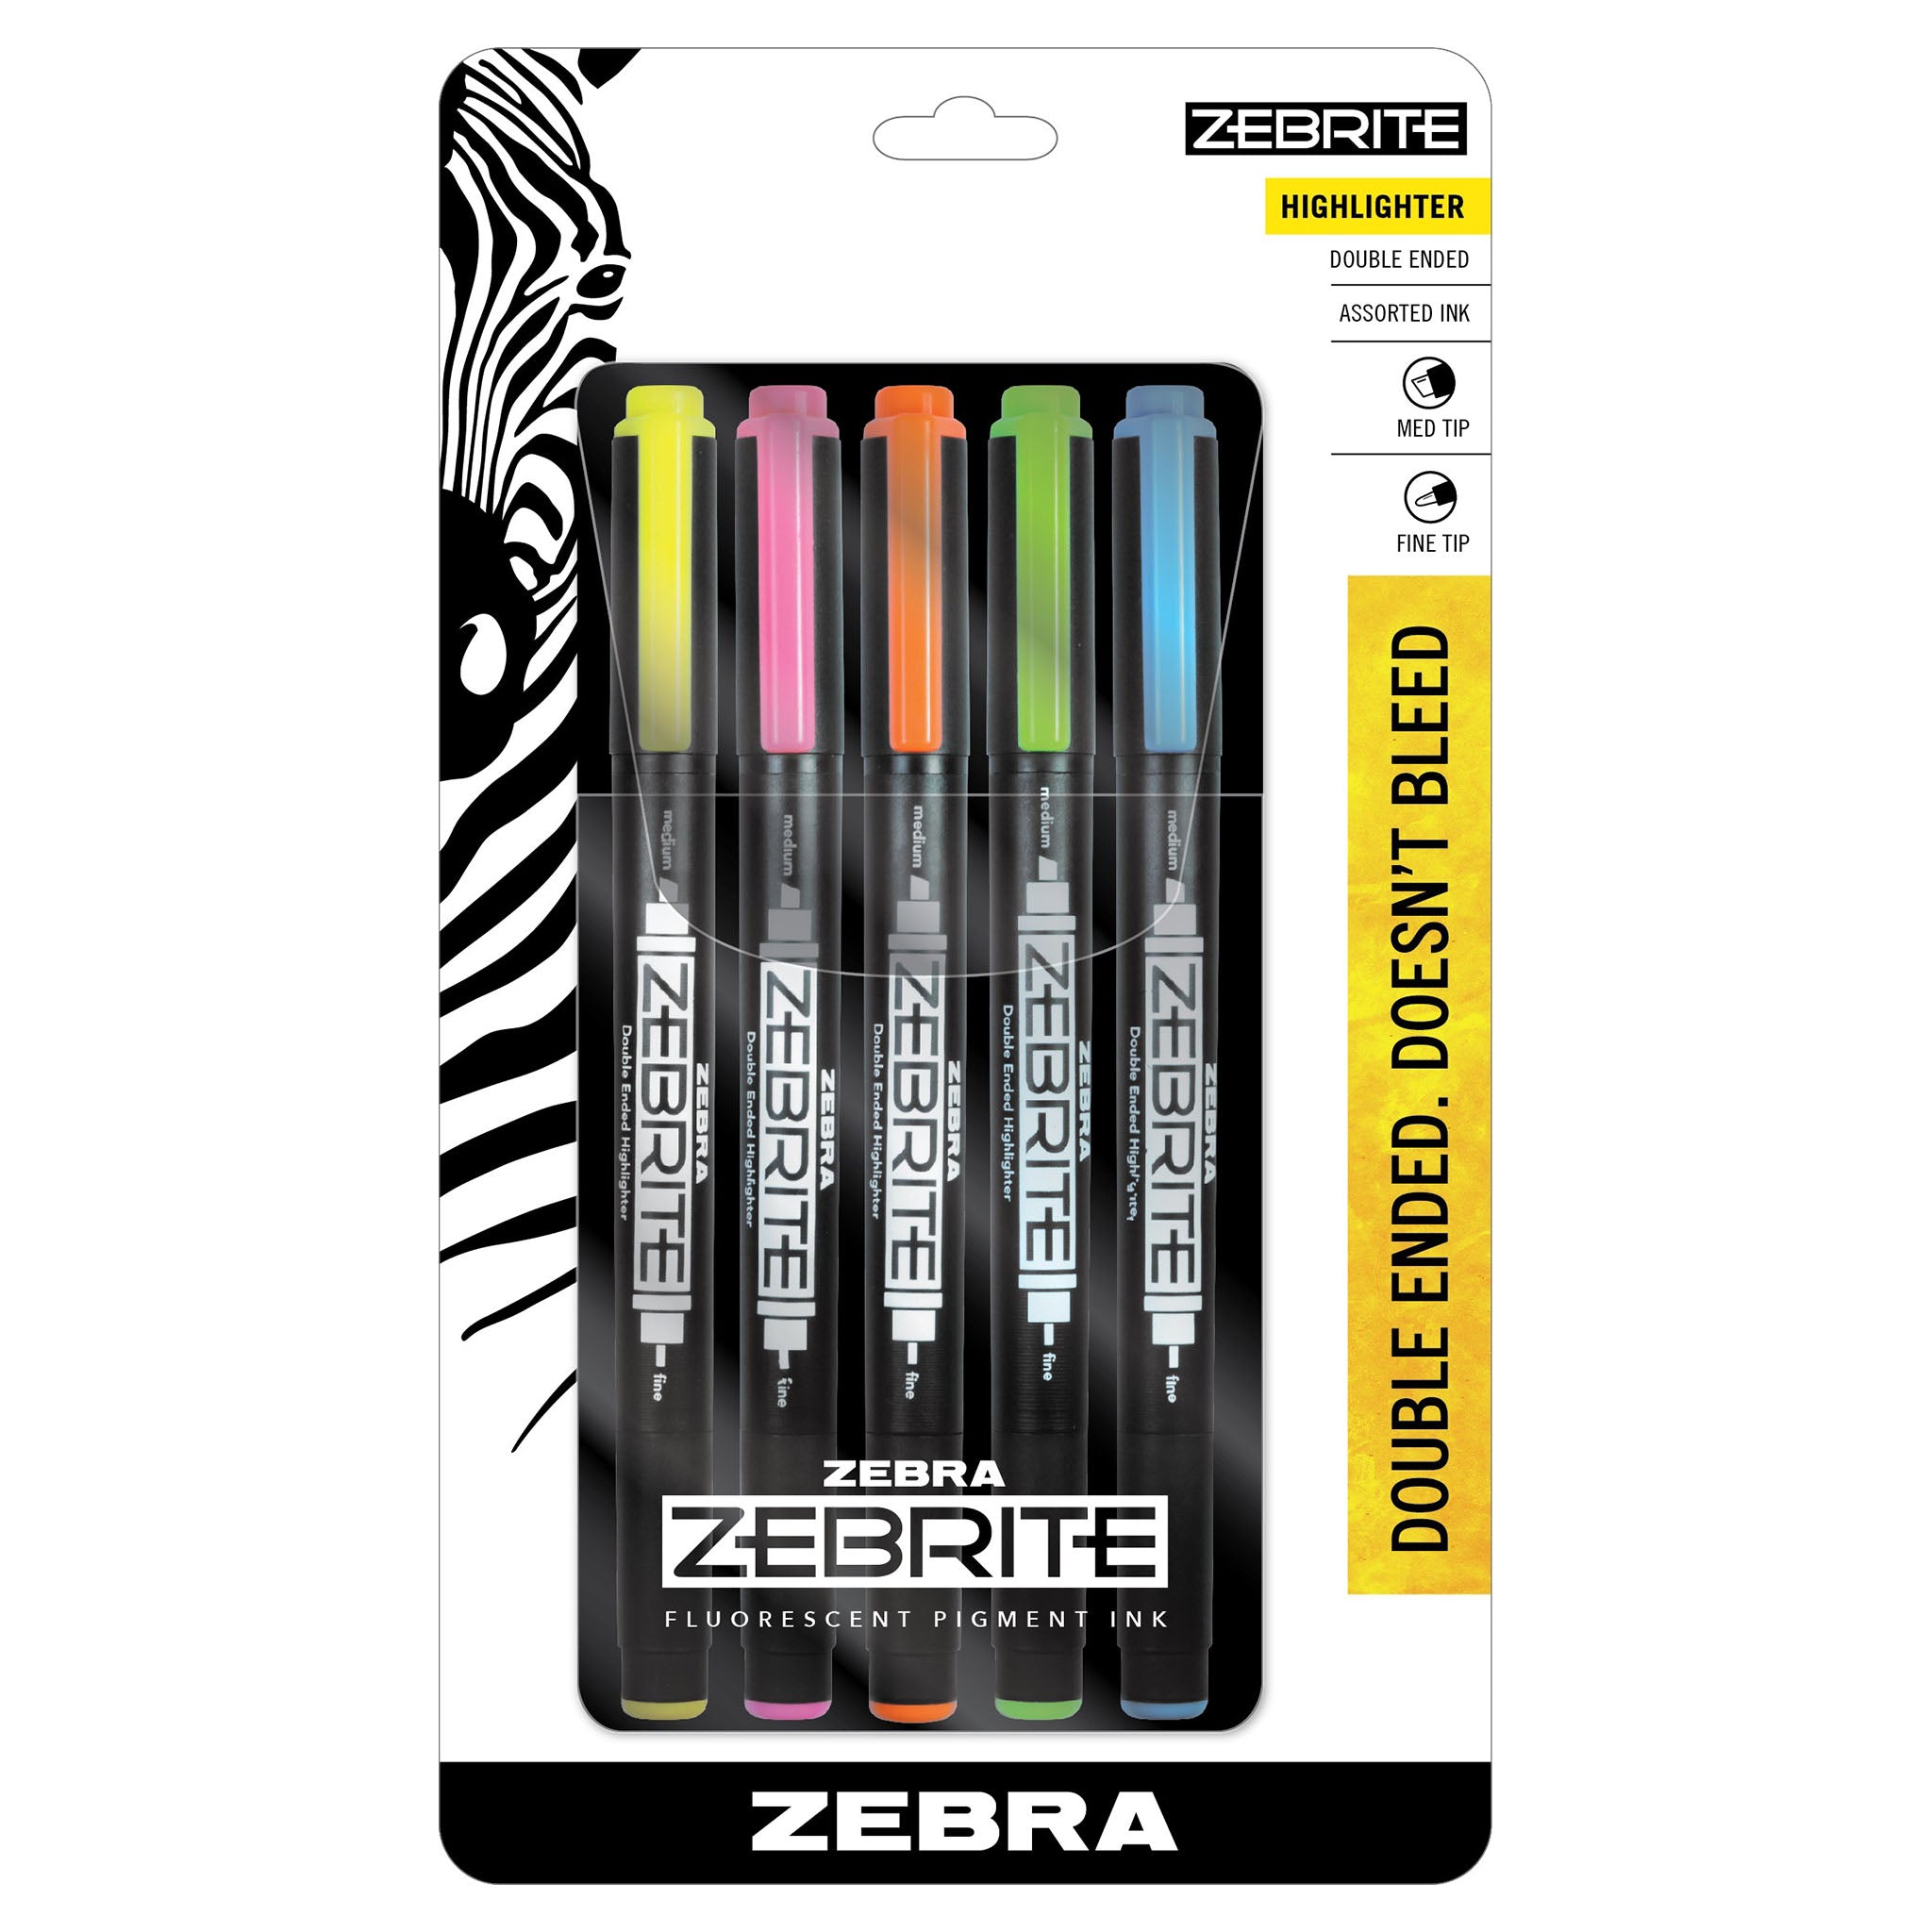 Bible or Book Marking Kit 4 Zebrite Highlighters 1 Pen Ruler in Wallet  040279 for sale online